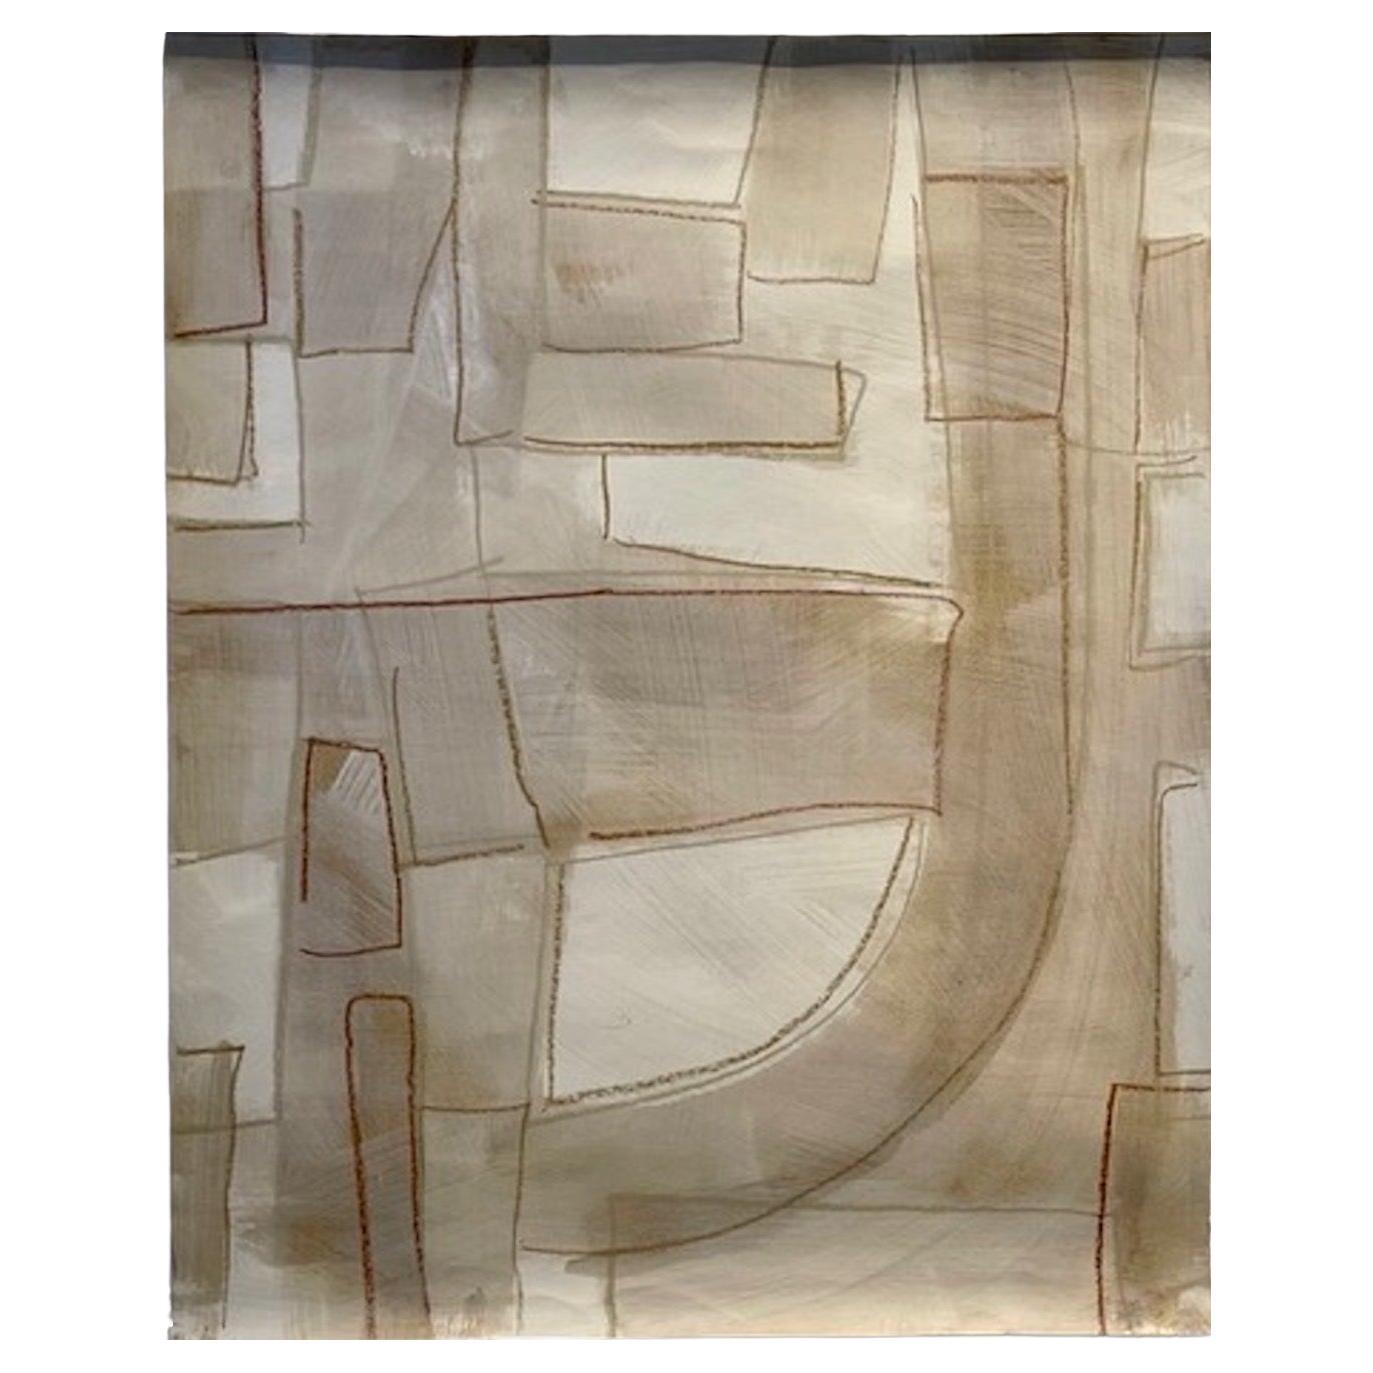 Untitled # 139 von Murray Duncan, Mischtechnik auf Papier, abstrakt, geometrisch, modern